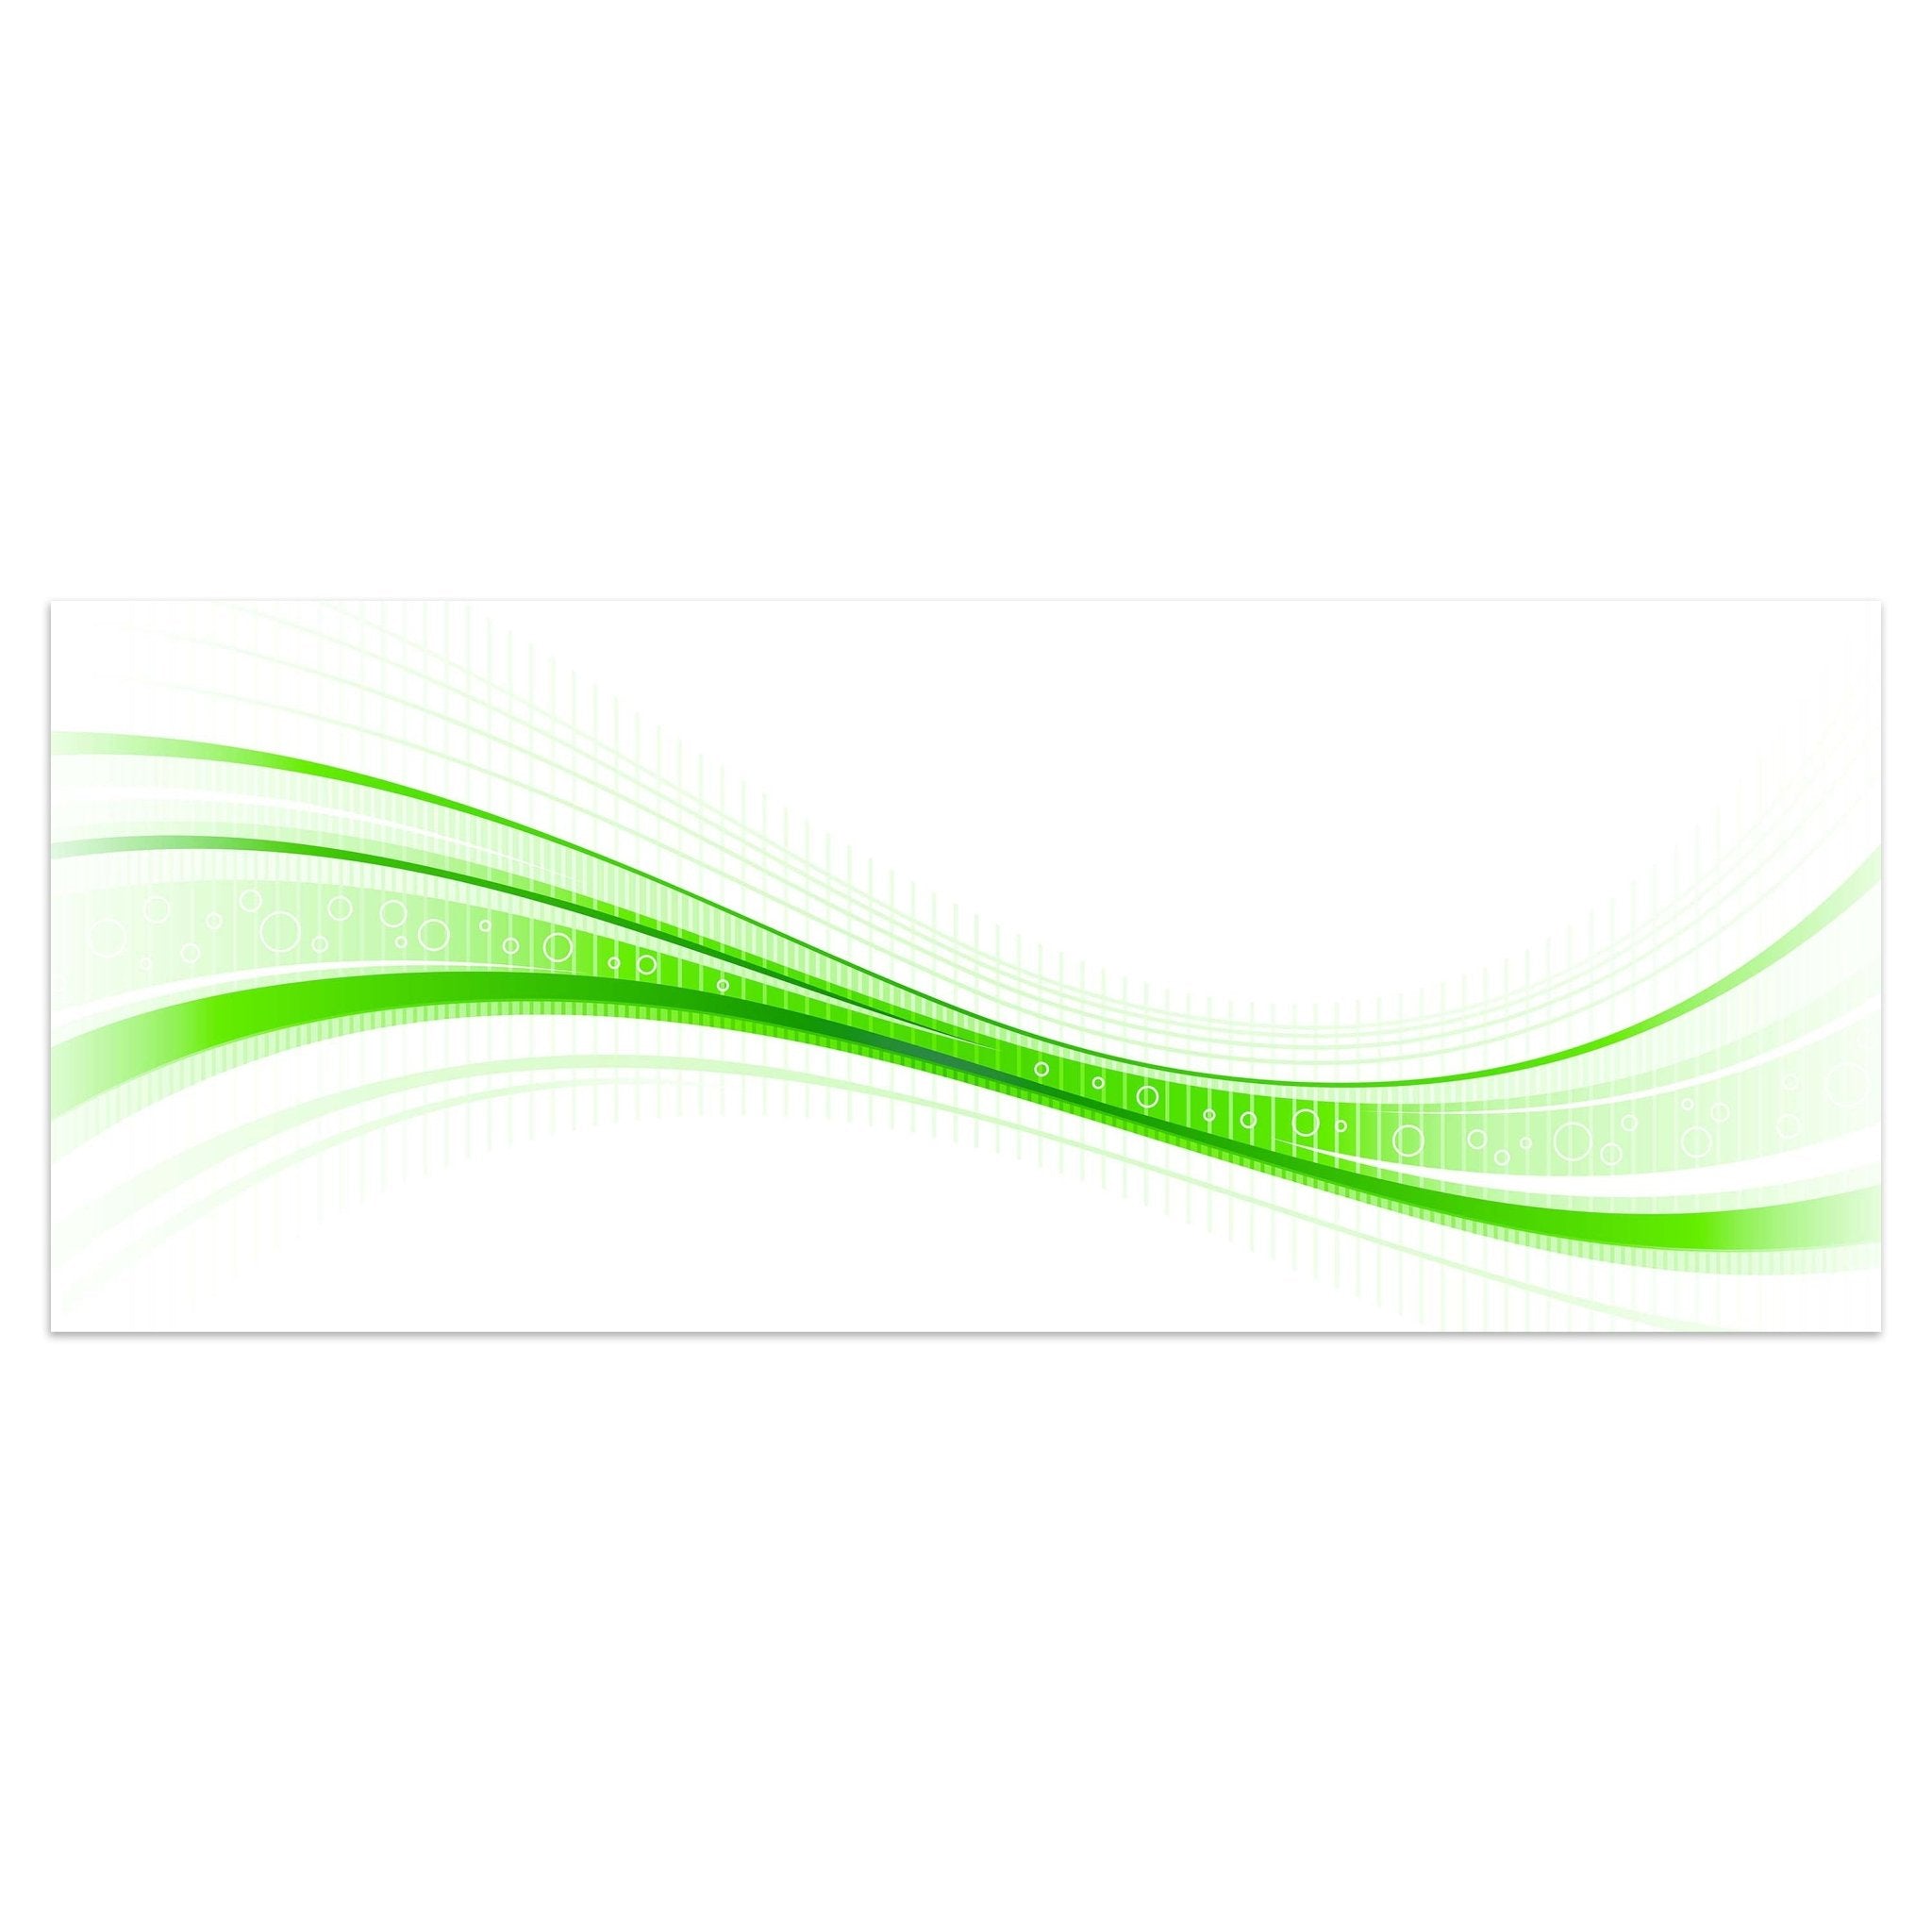 Leinwandbild Grüne Welle M0313 kaufen - Bild 1